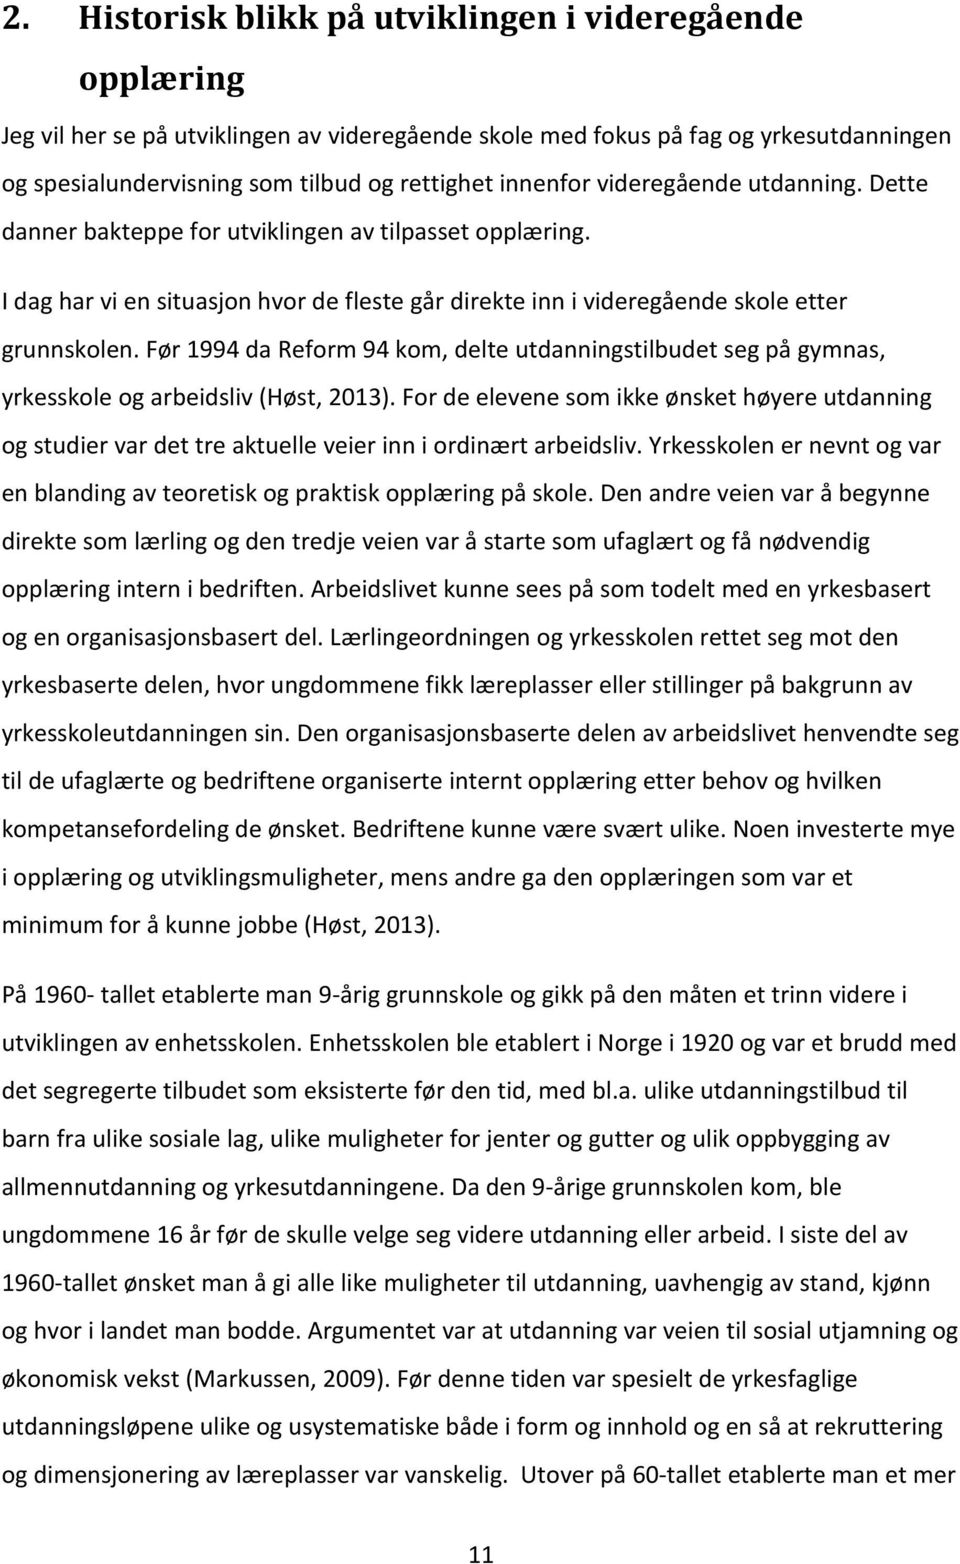 Før 1994 da Reform 94 kom, delte utdanningstilbudet seg på gymnas, yrkesskole og arbeidsliv (Høst, 2013).